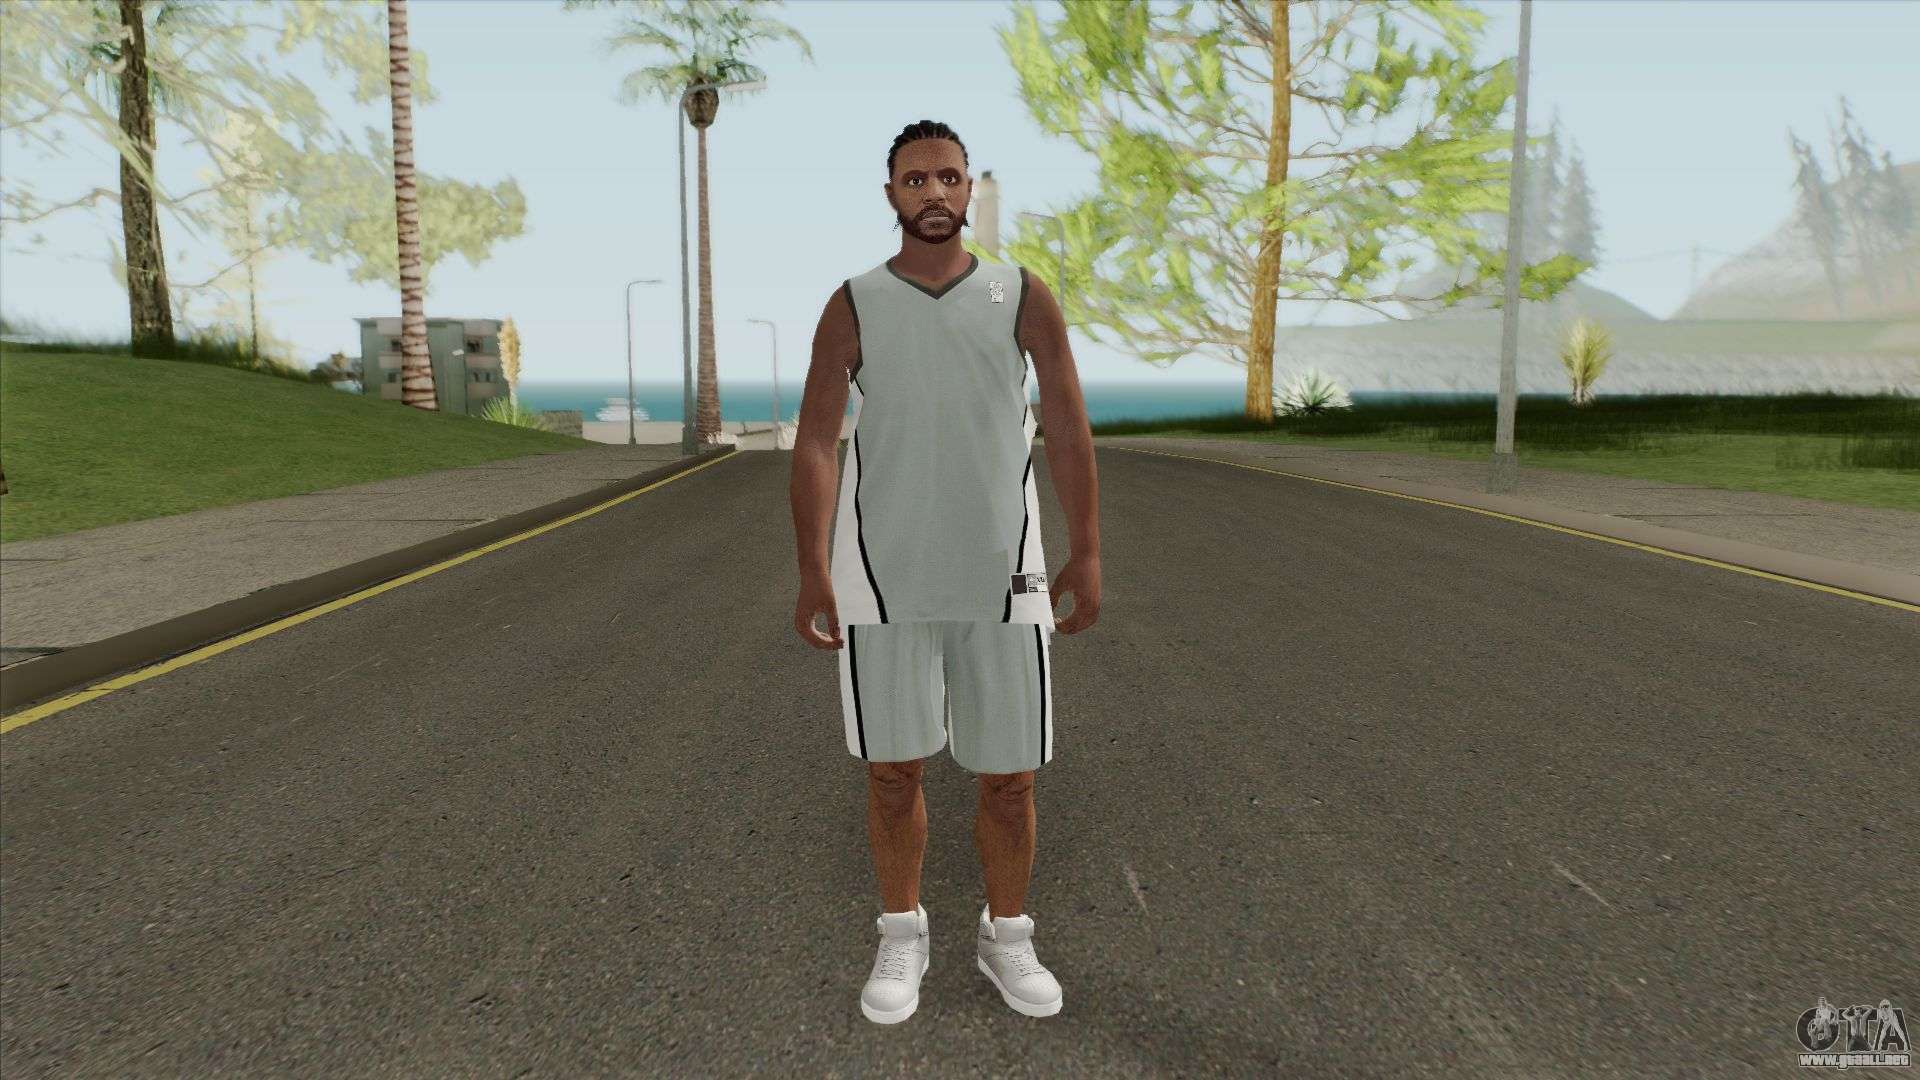 Basketball Player para GTA San Andreas